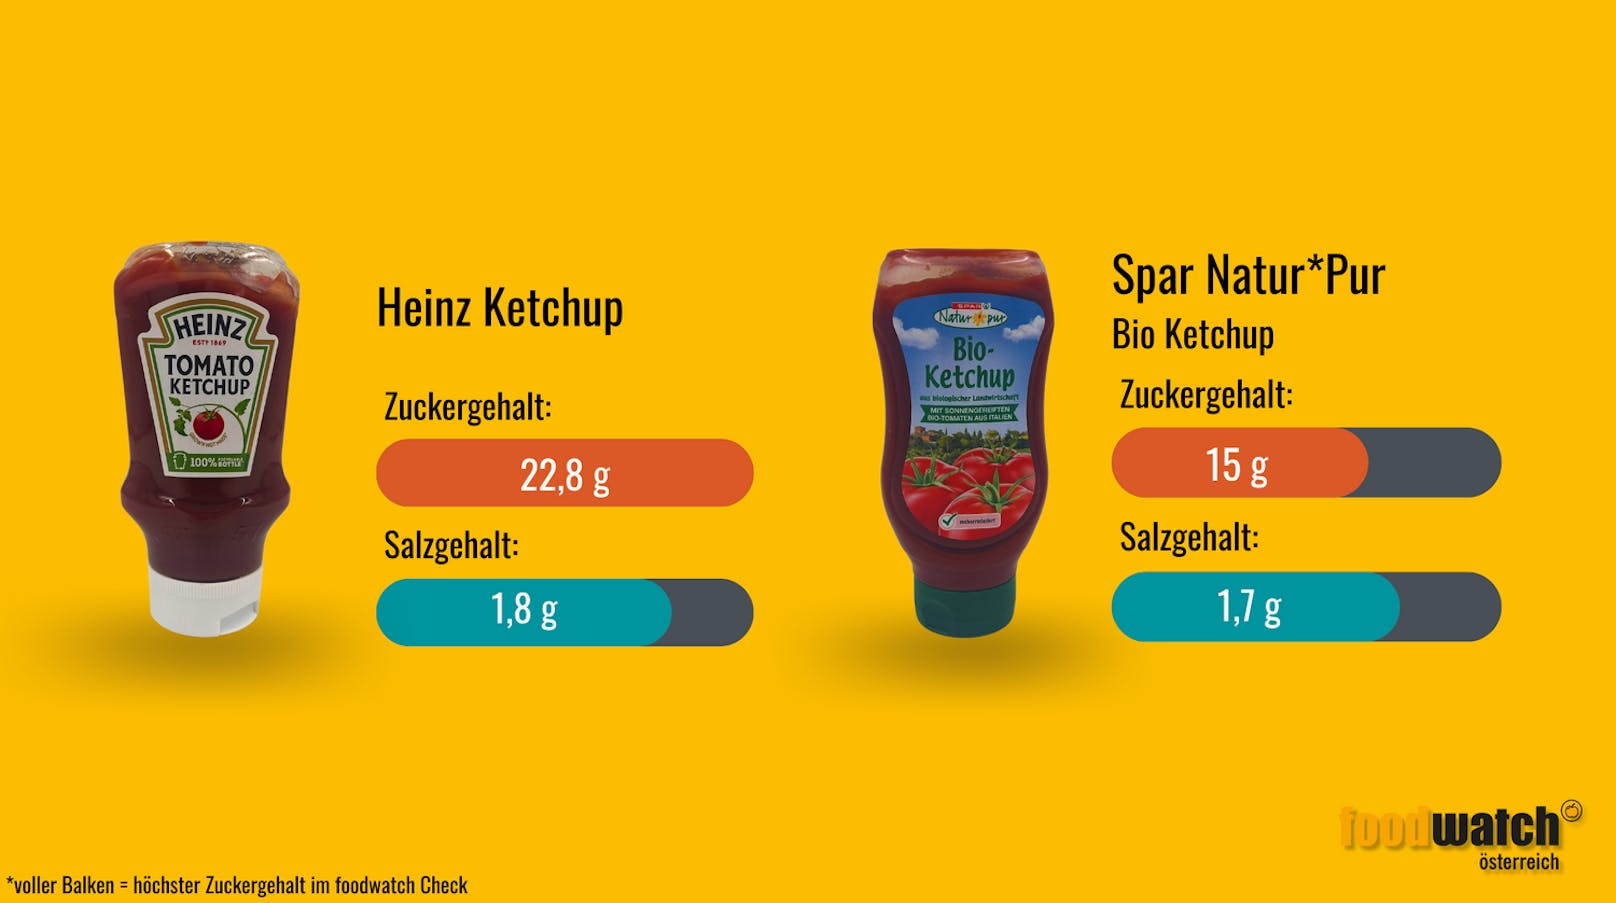 Im Tomatenketchup von Heinz ist mehr als ein Stück Würfelzucker pro Portion (20 Gramm) enthalten. Im Vergleich dazu: Das Spar Natur*Pur Bio Ketchup&nbsp; kommt mit nur 15 Gramm Zucker aus.&nbsp;